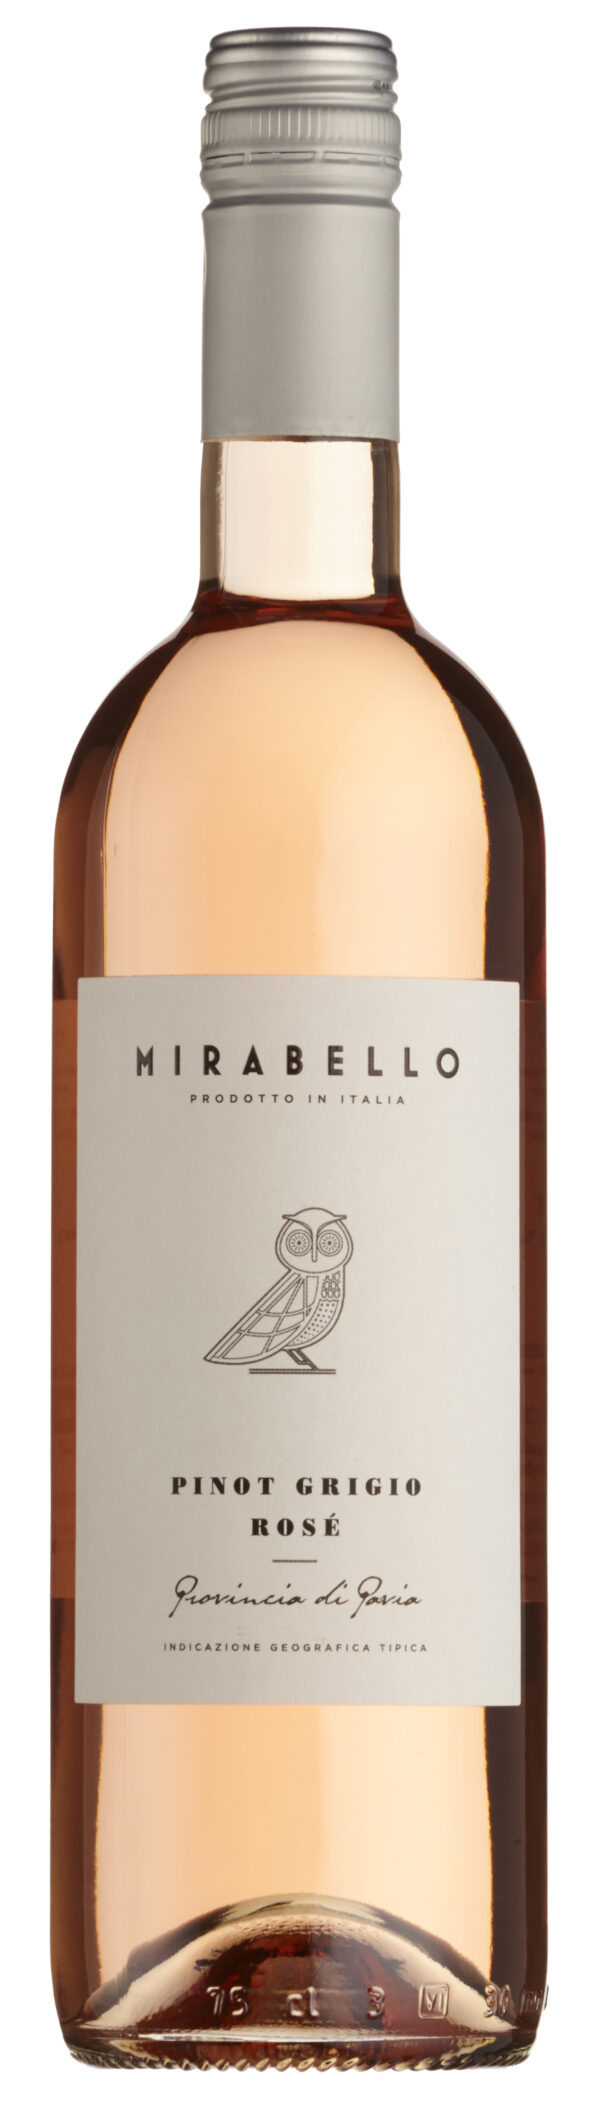 Mirabello Pinot Grigio Rosé Igt Provincia Di Pavia 2021